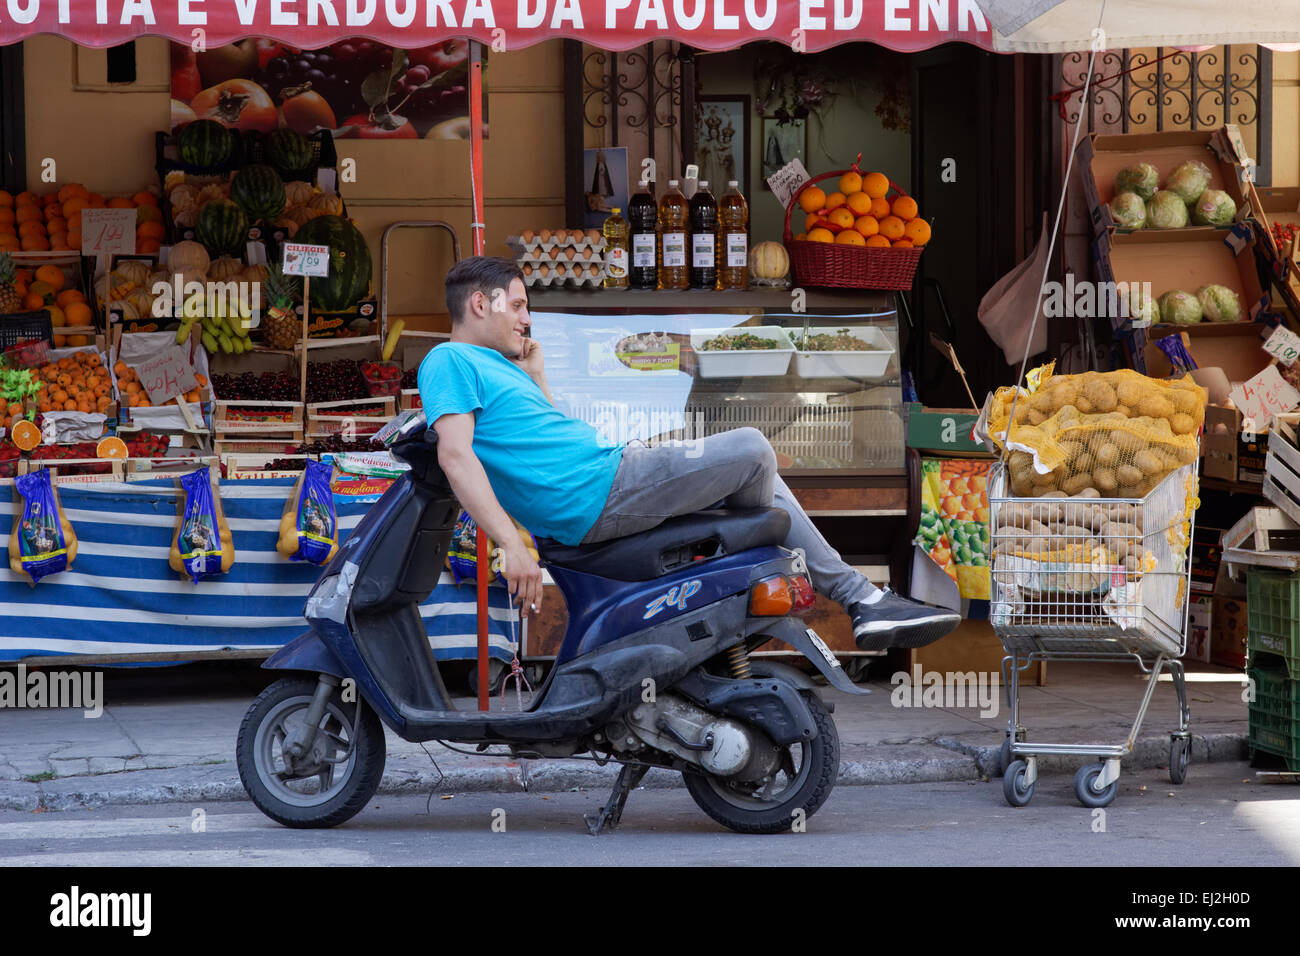 Proveedor de frutas tomando un descanso, Palermo, Sicilia. Foto de stock